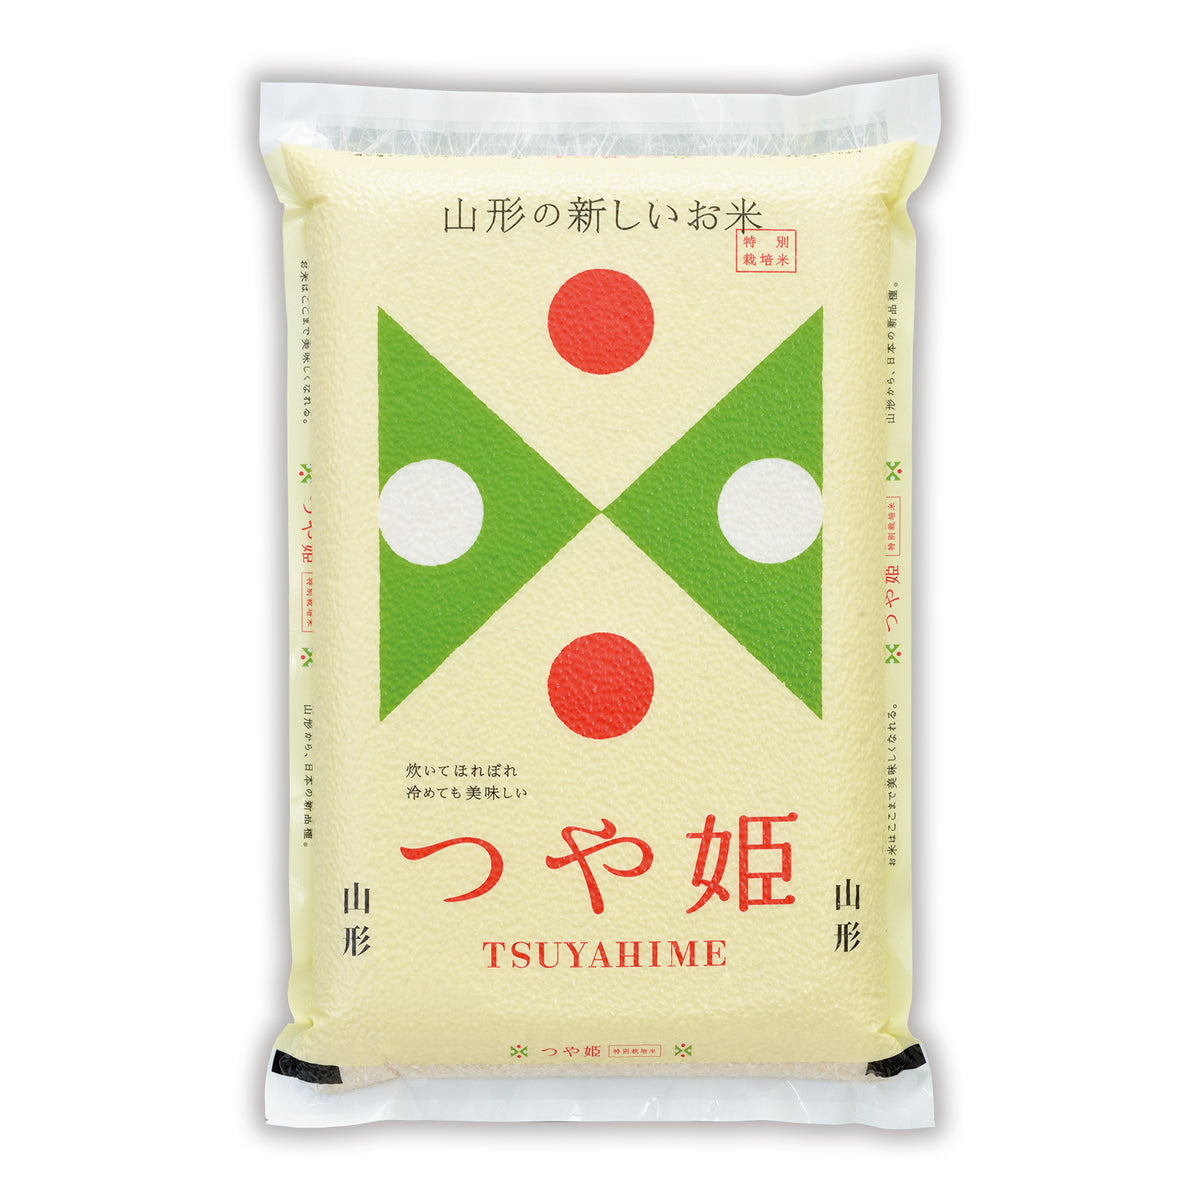 Yamagata Tsuyahime White Rice